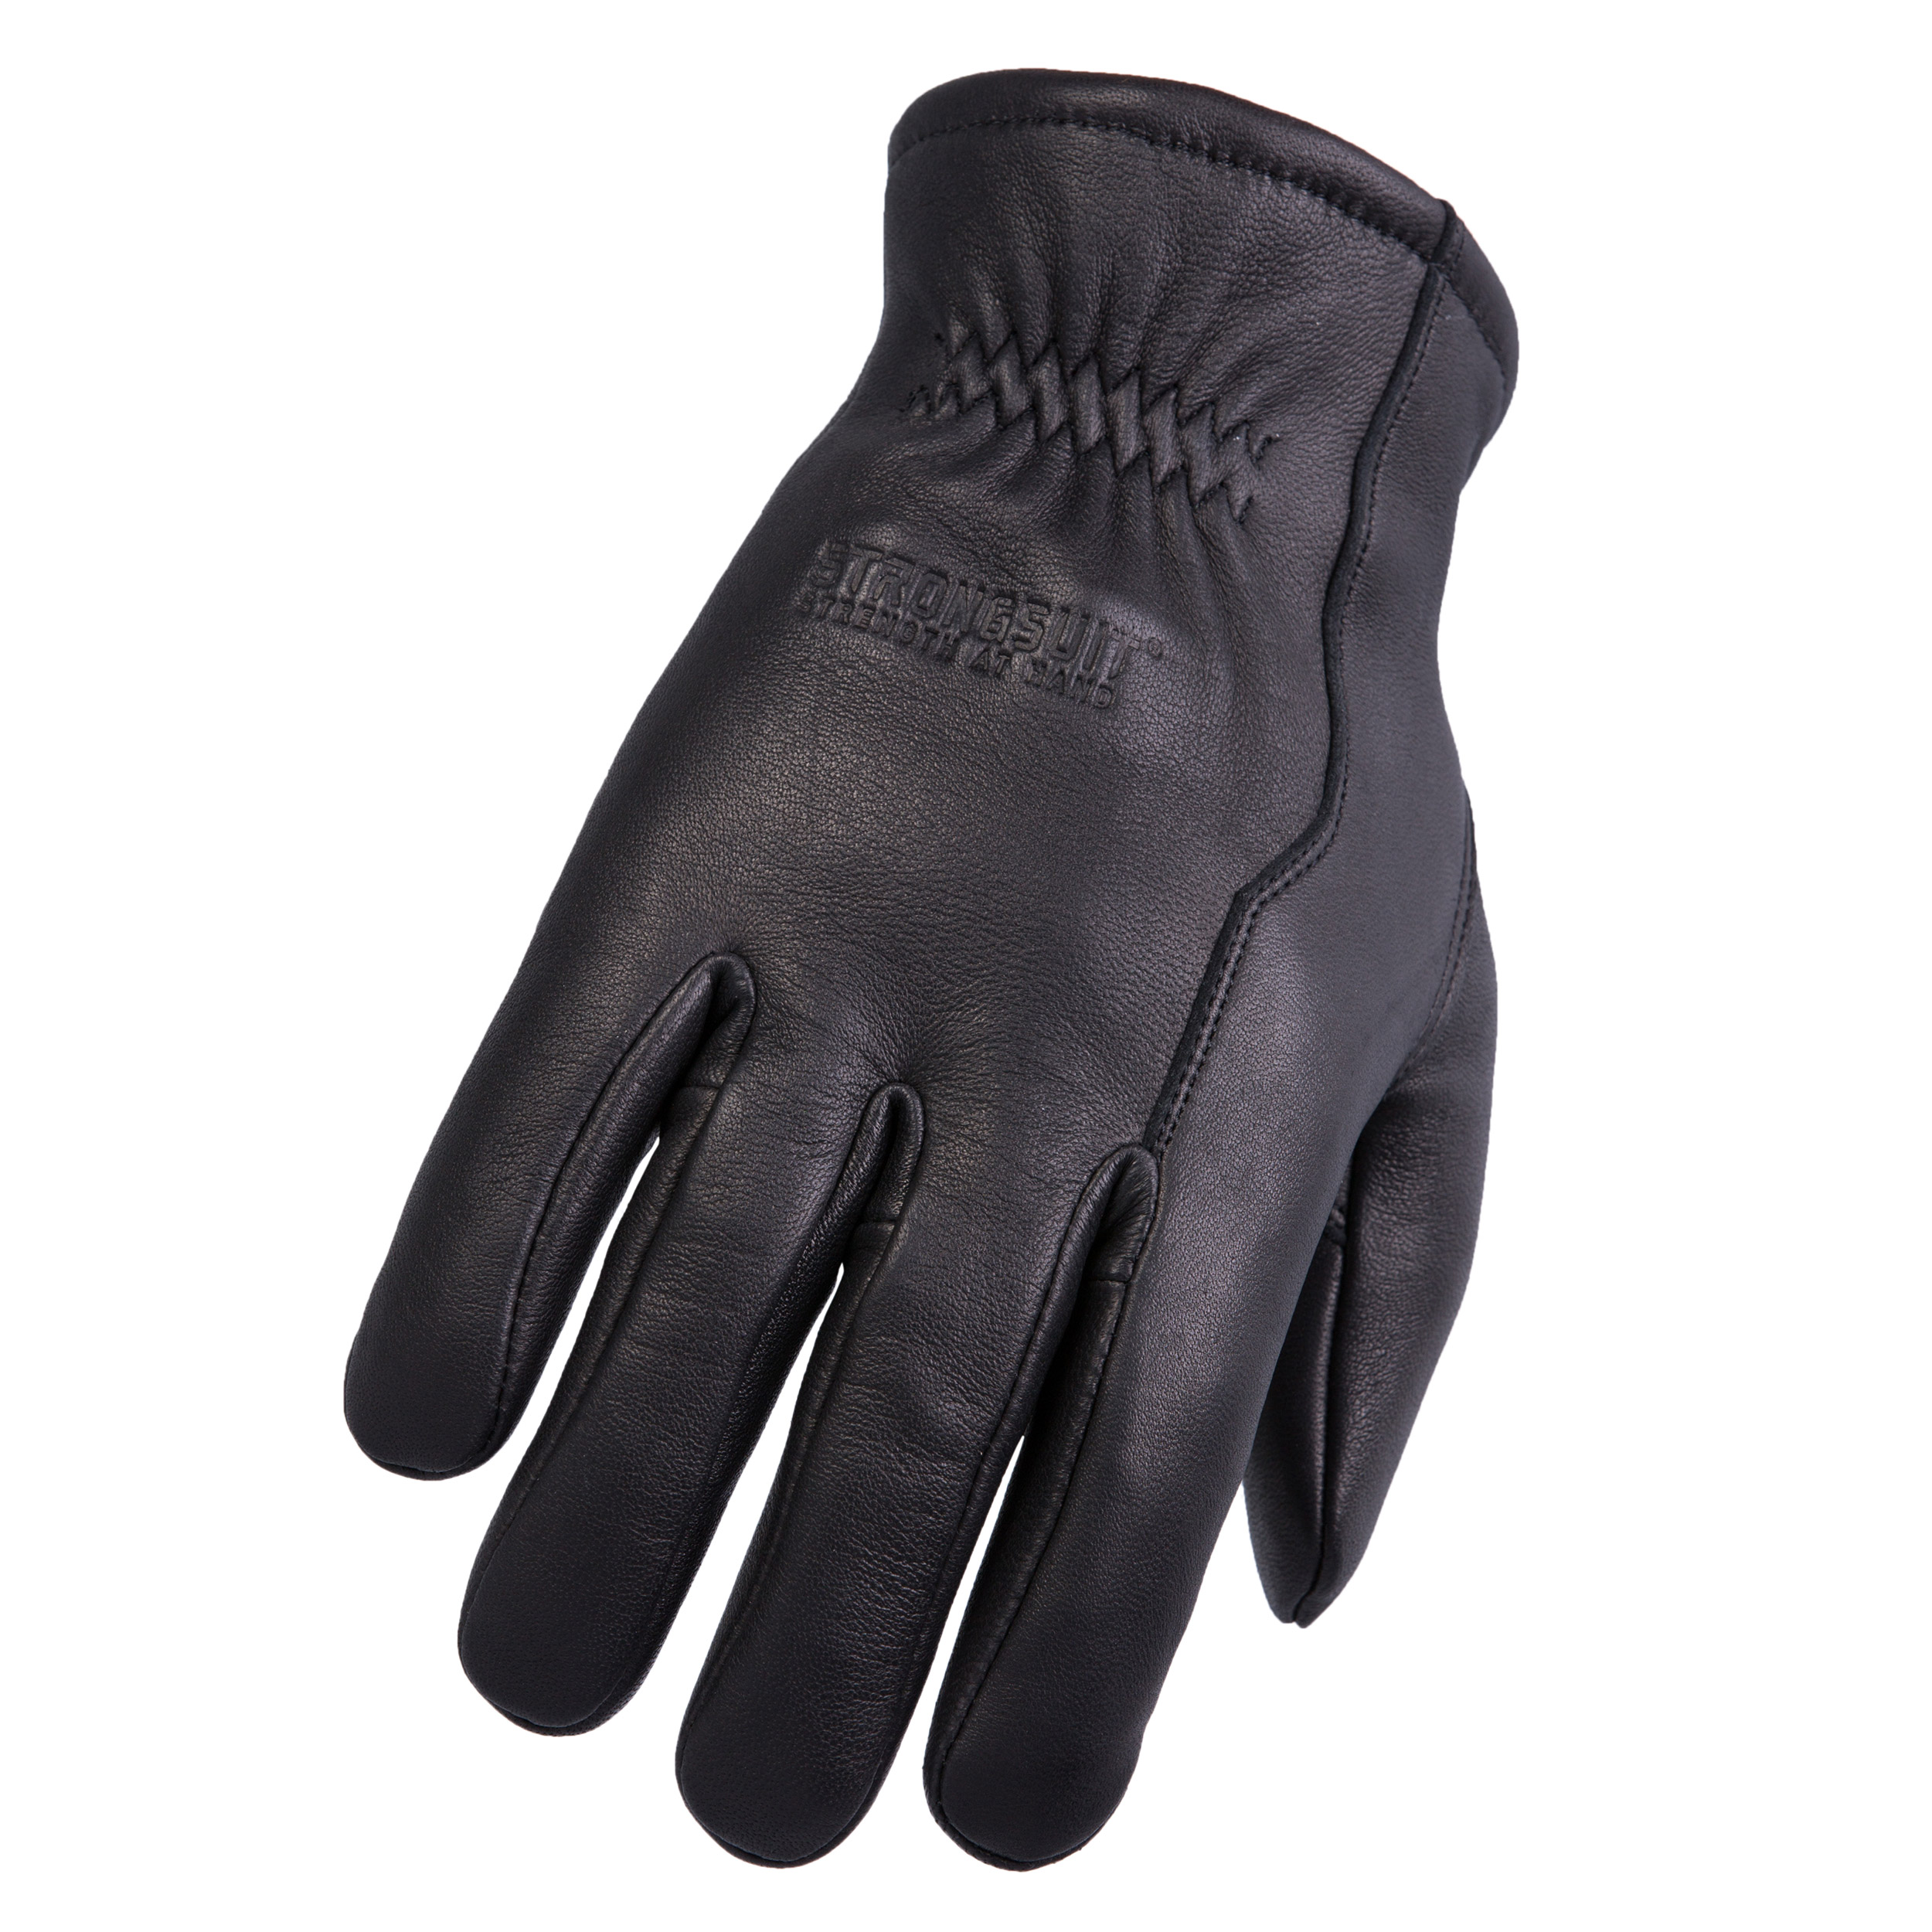 Weathermaster Gloves Xxl